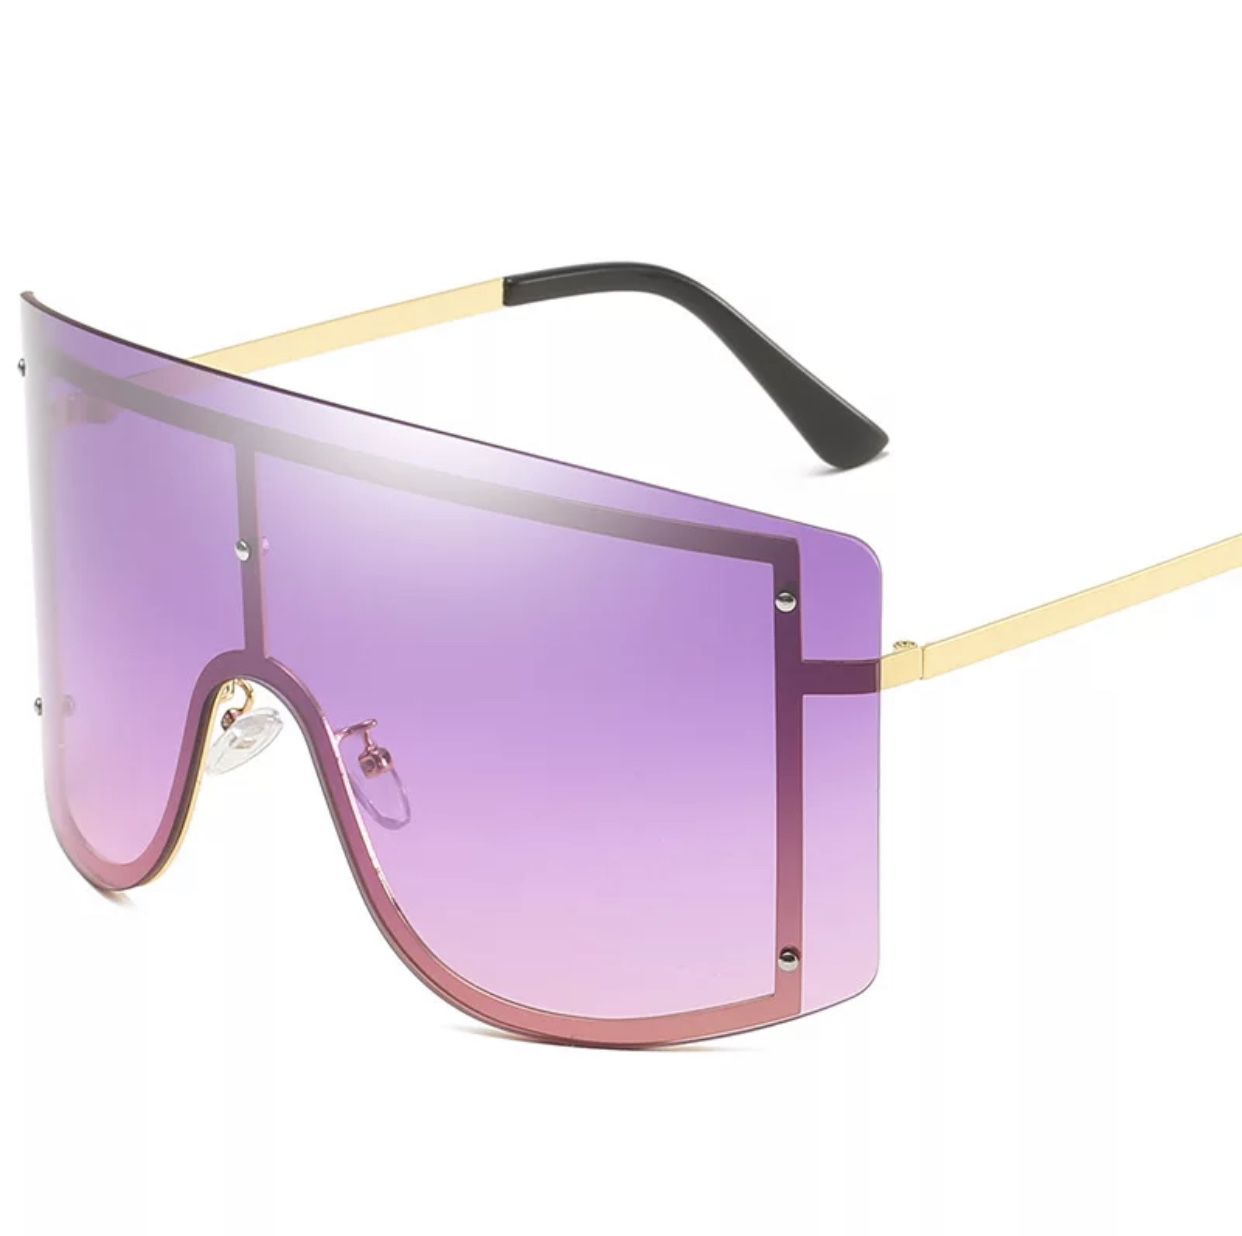 Sunglasses 2020 estilo Cardi B